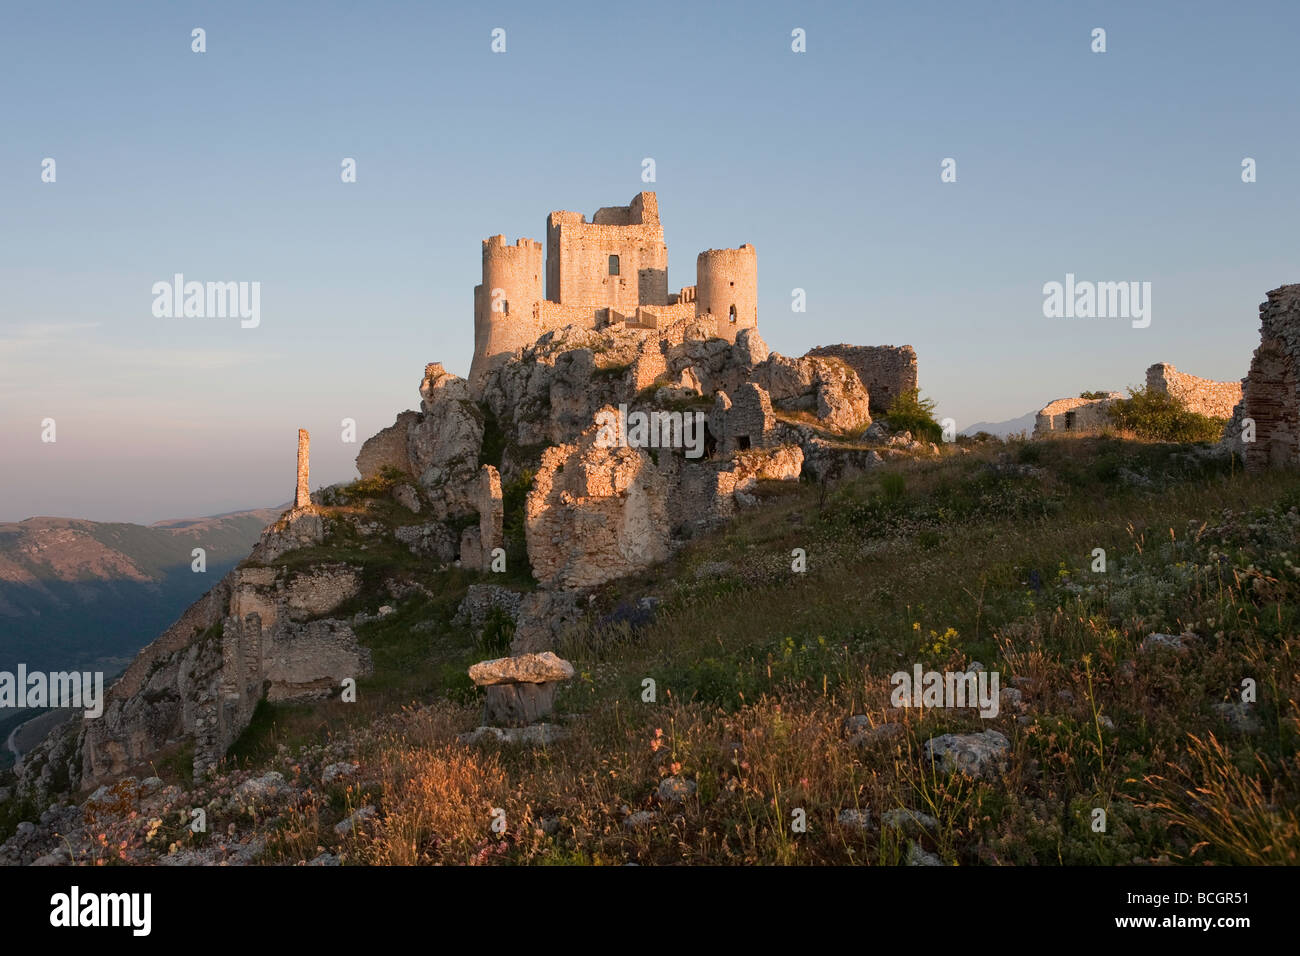 Rocca Calascio castello nel parco nazionale del Gran Sasso, Abruzzo, Italia Foto Stock